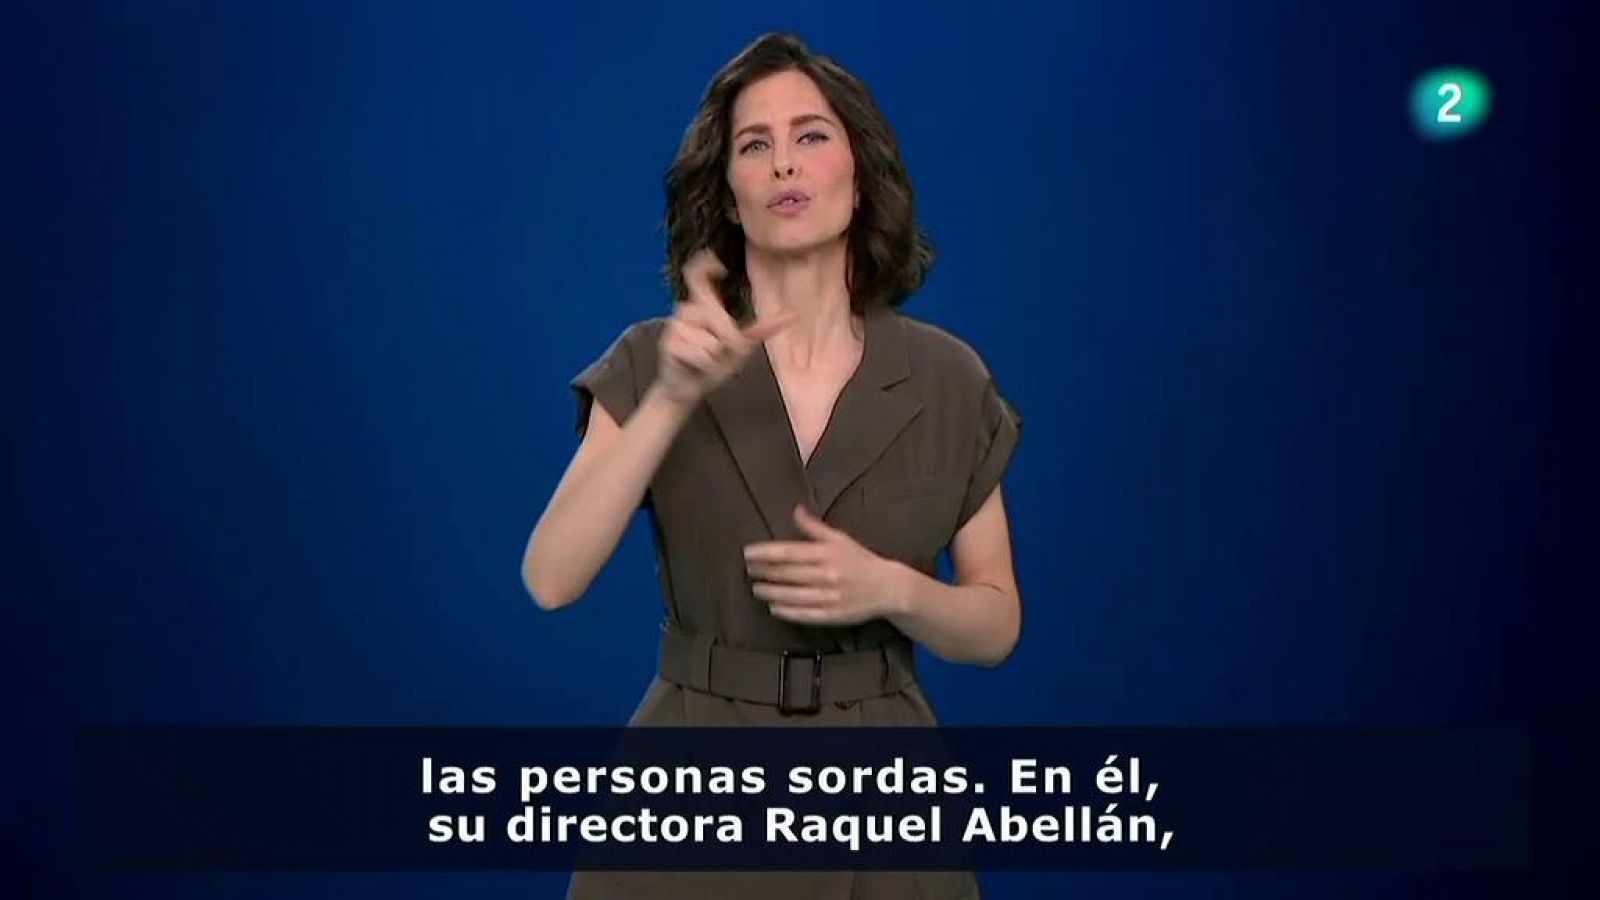 Cultura: "El poder de las manos" un documental de Raquel Abellán